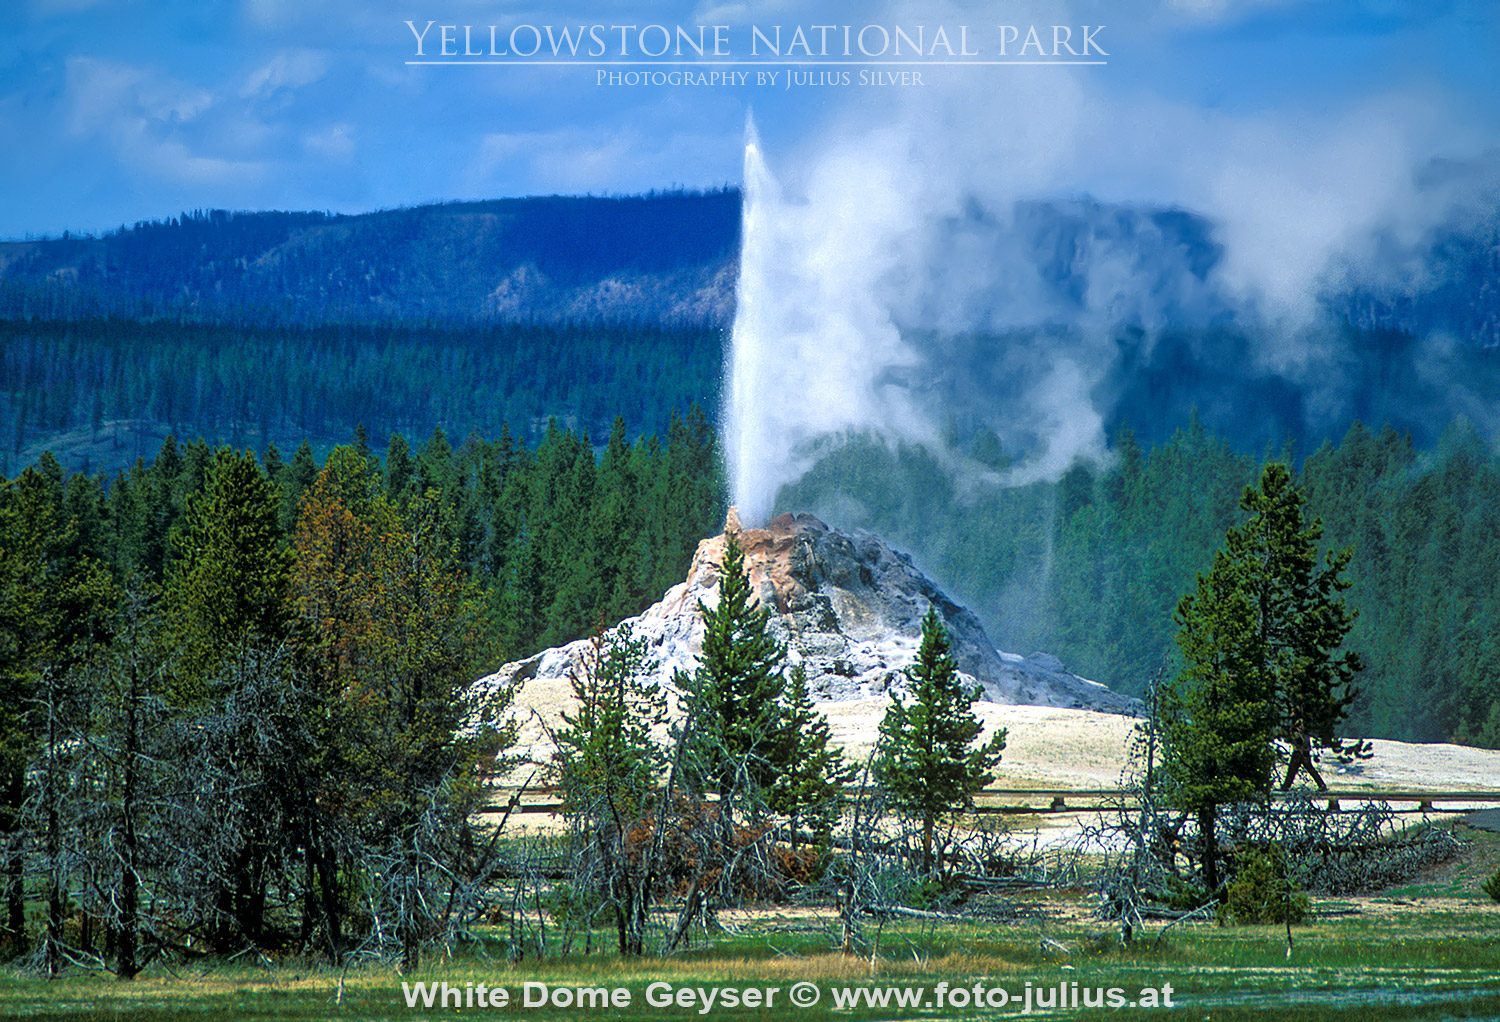 y022a_White_Dome_Geyser_Yellowstone.jpg, 749kB